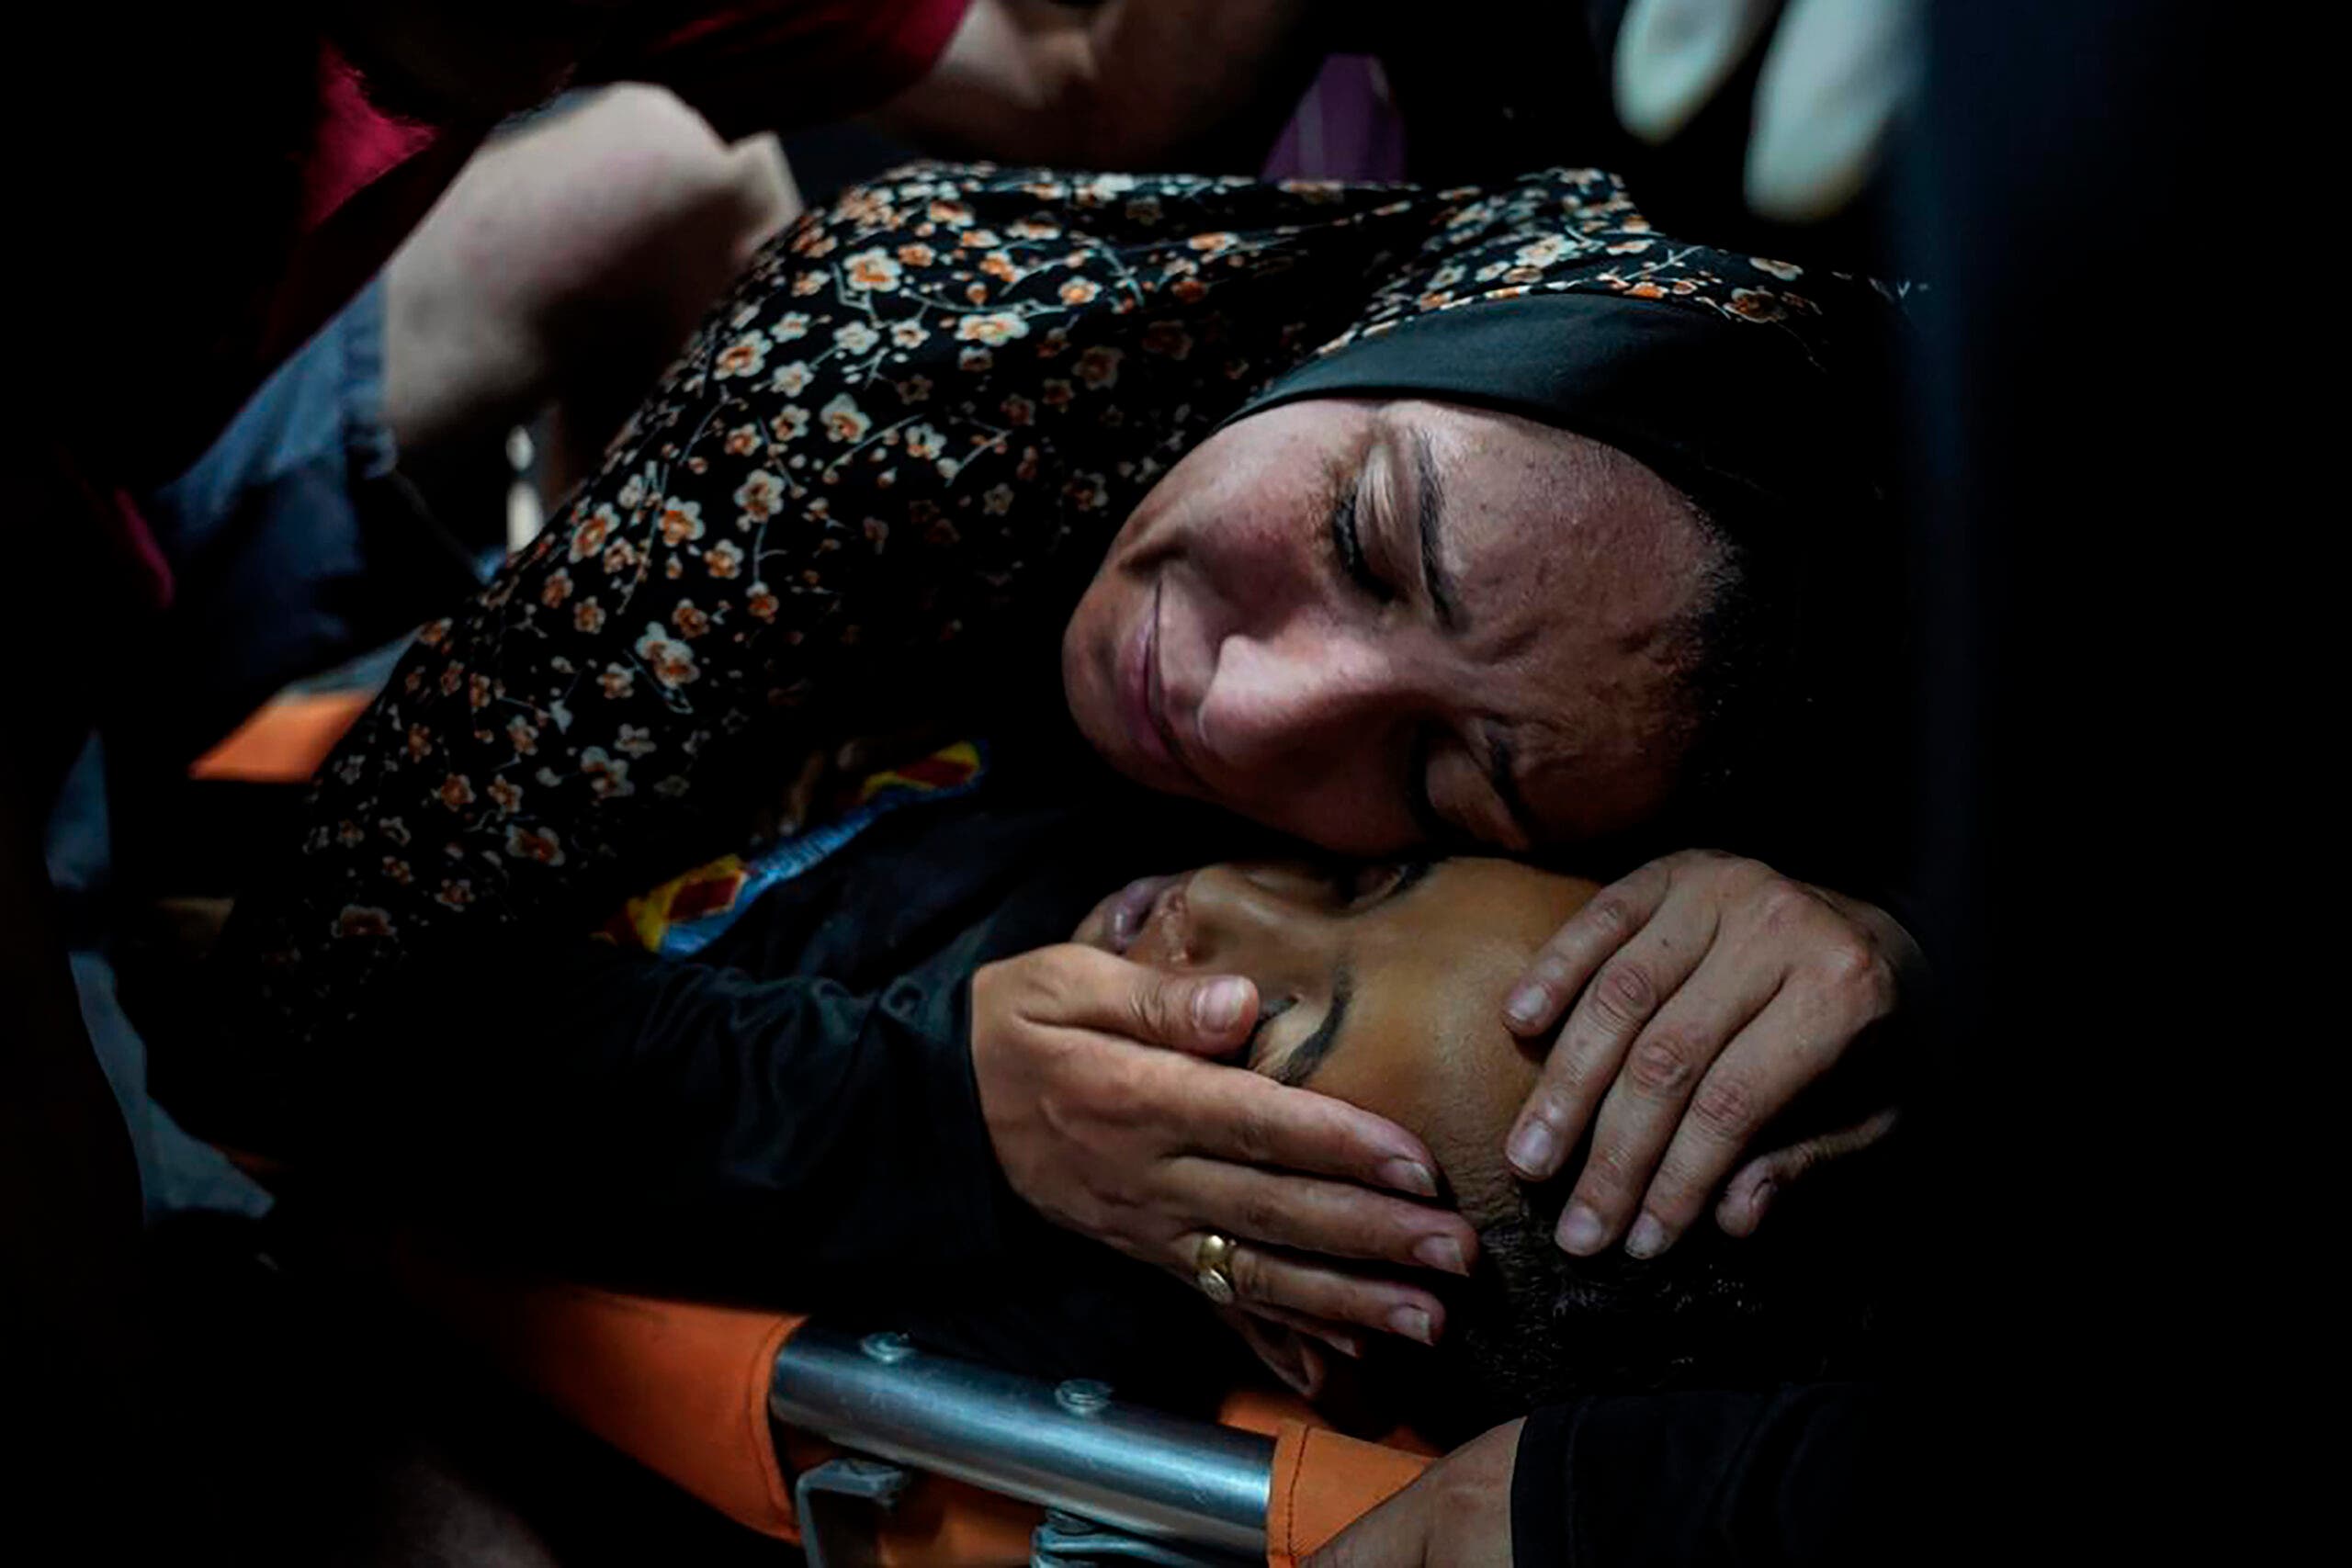 Los muertos en Gaza superan 35.000 tras los últimos ataques israelíes